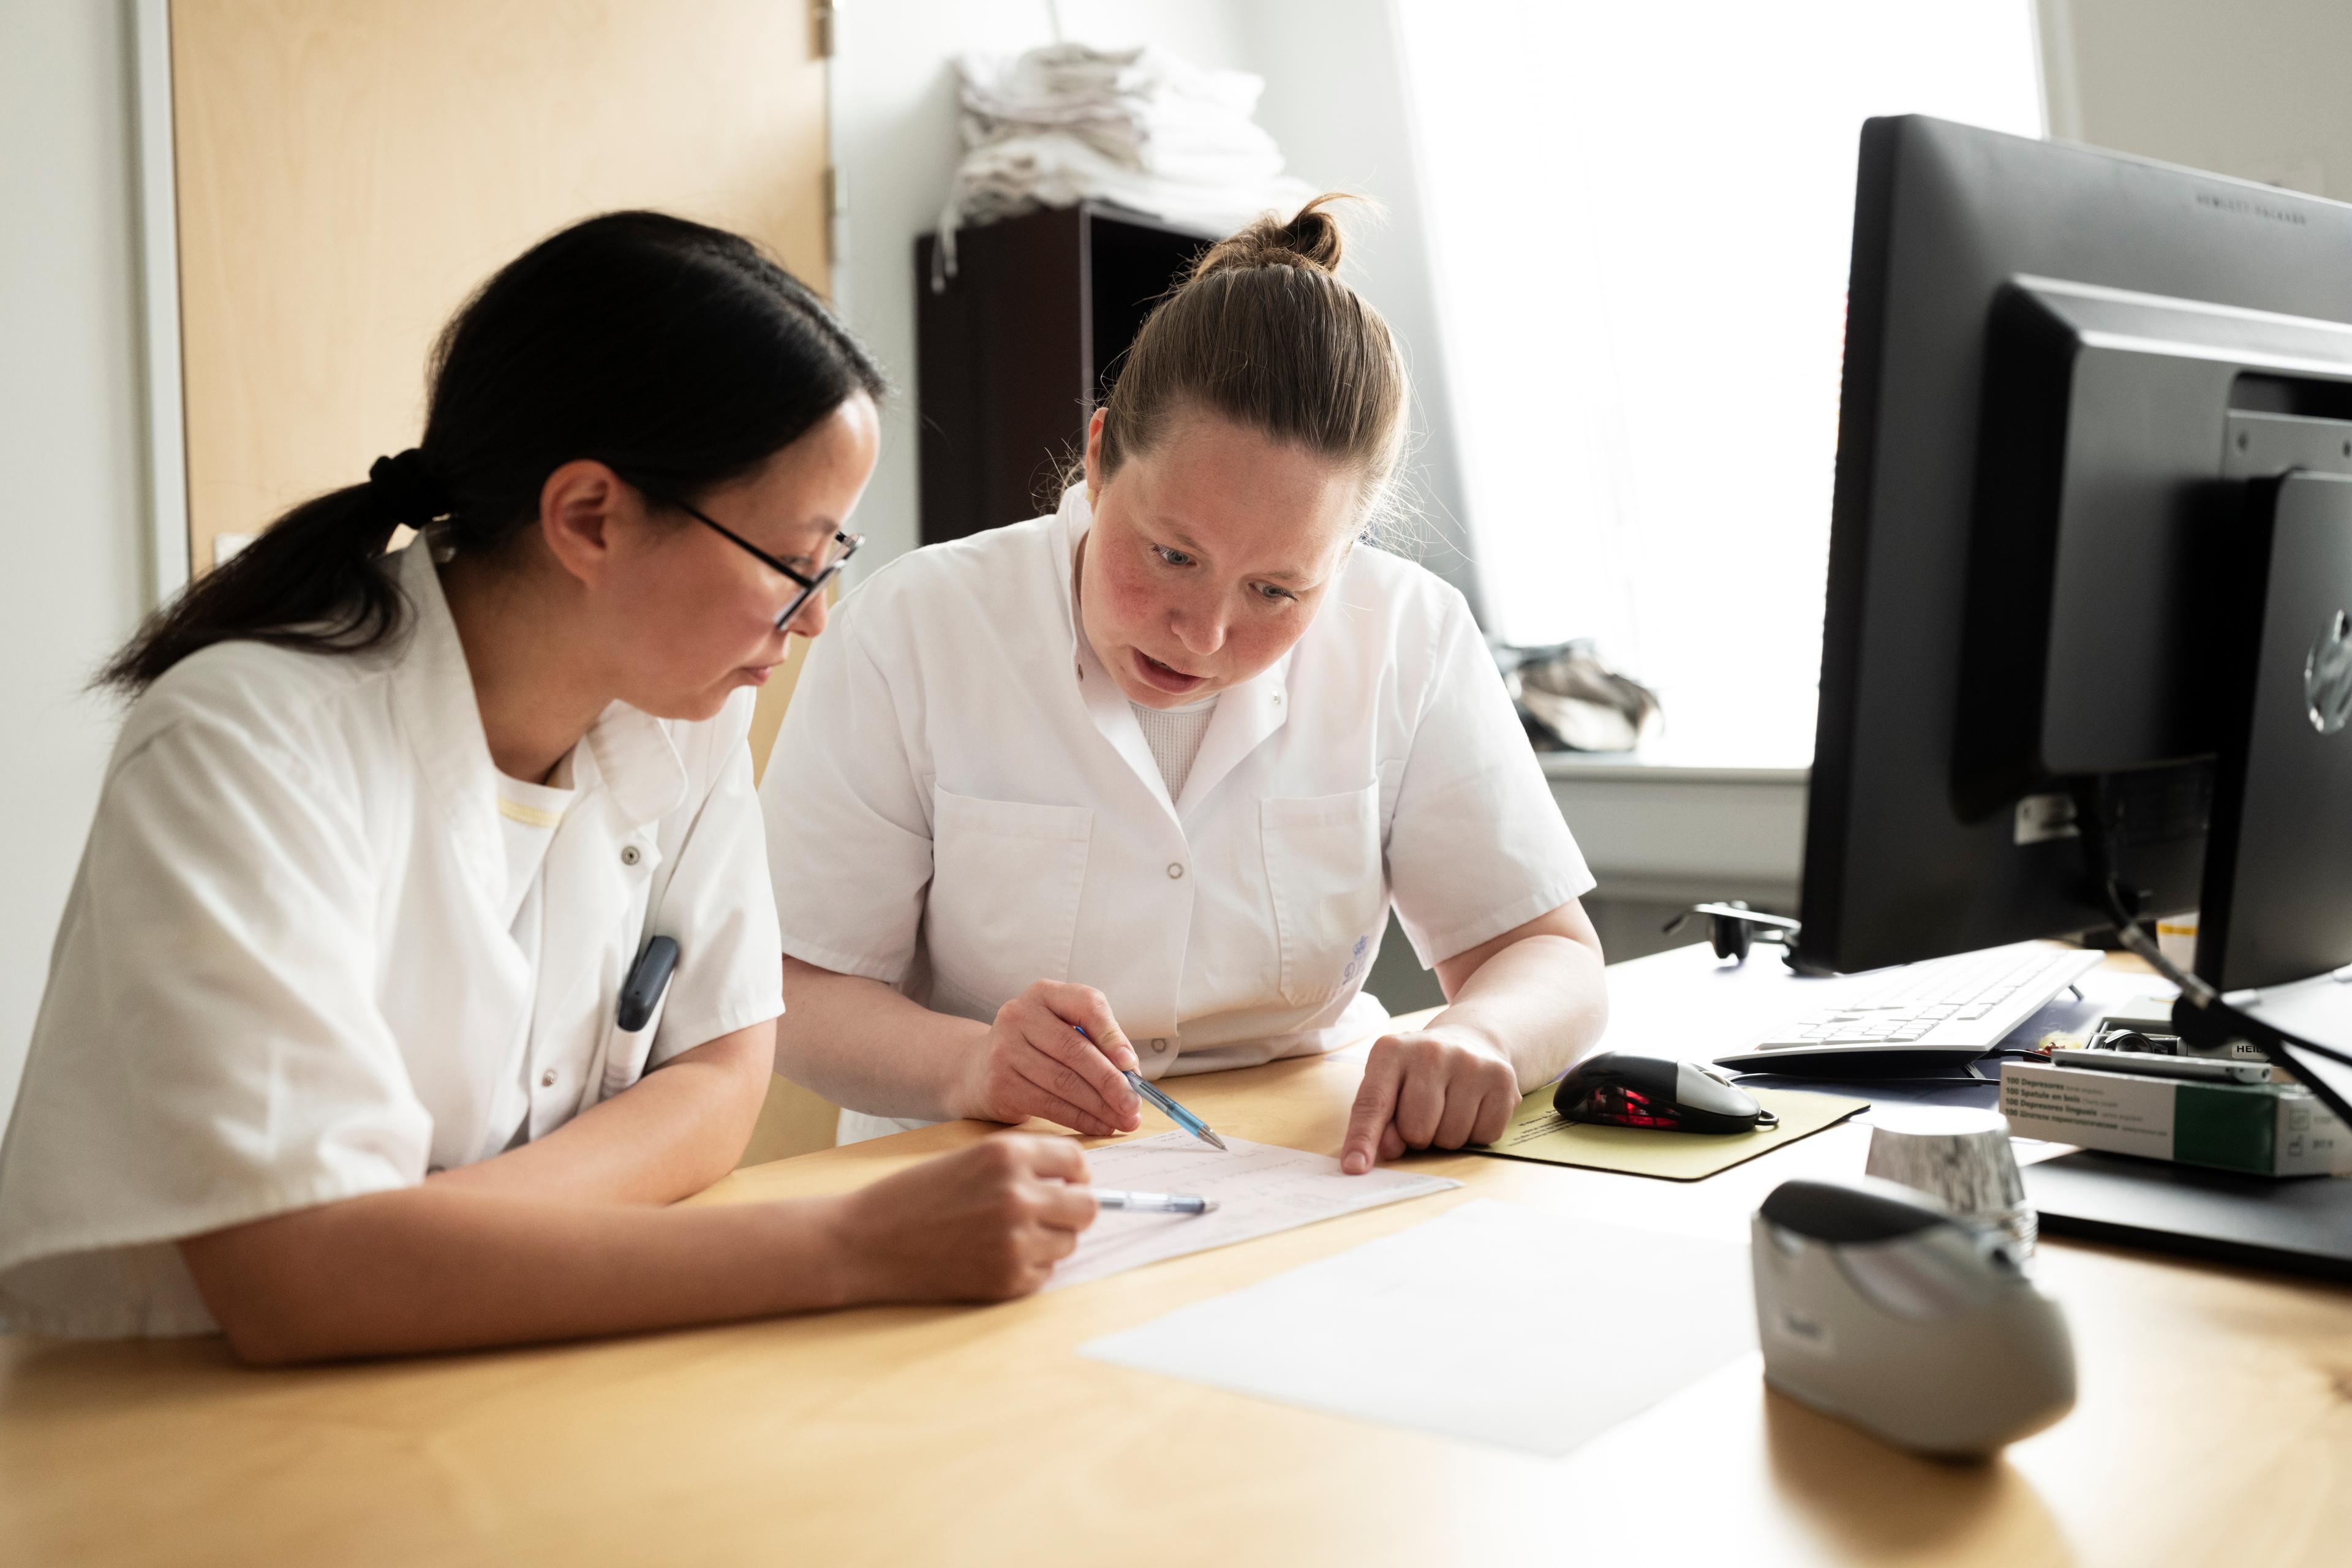 Læge Heidi Noasen (til højre) på arbejde ved lægetelefonen på Dronning Ingrids Hospital sammen med sin kollega læge Kristina Roed. Foto: Christian Sølbeck